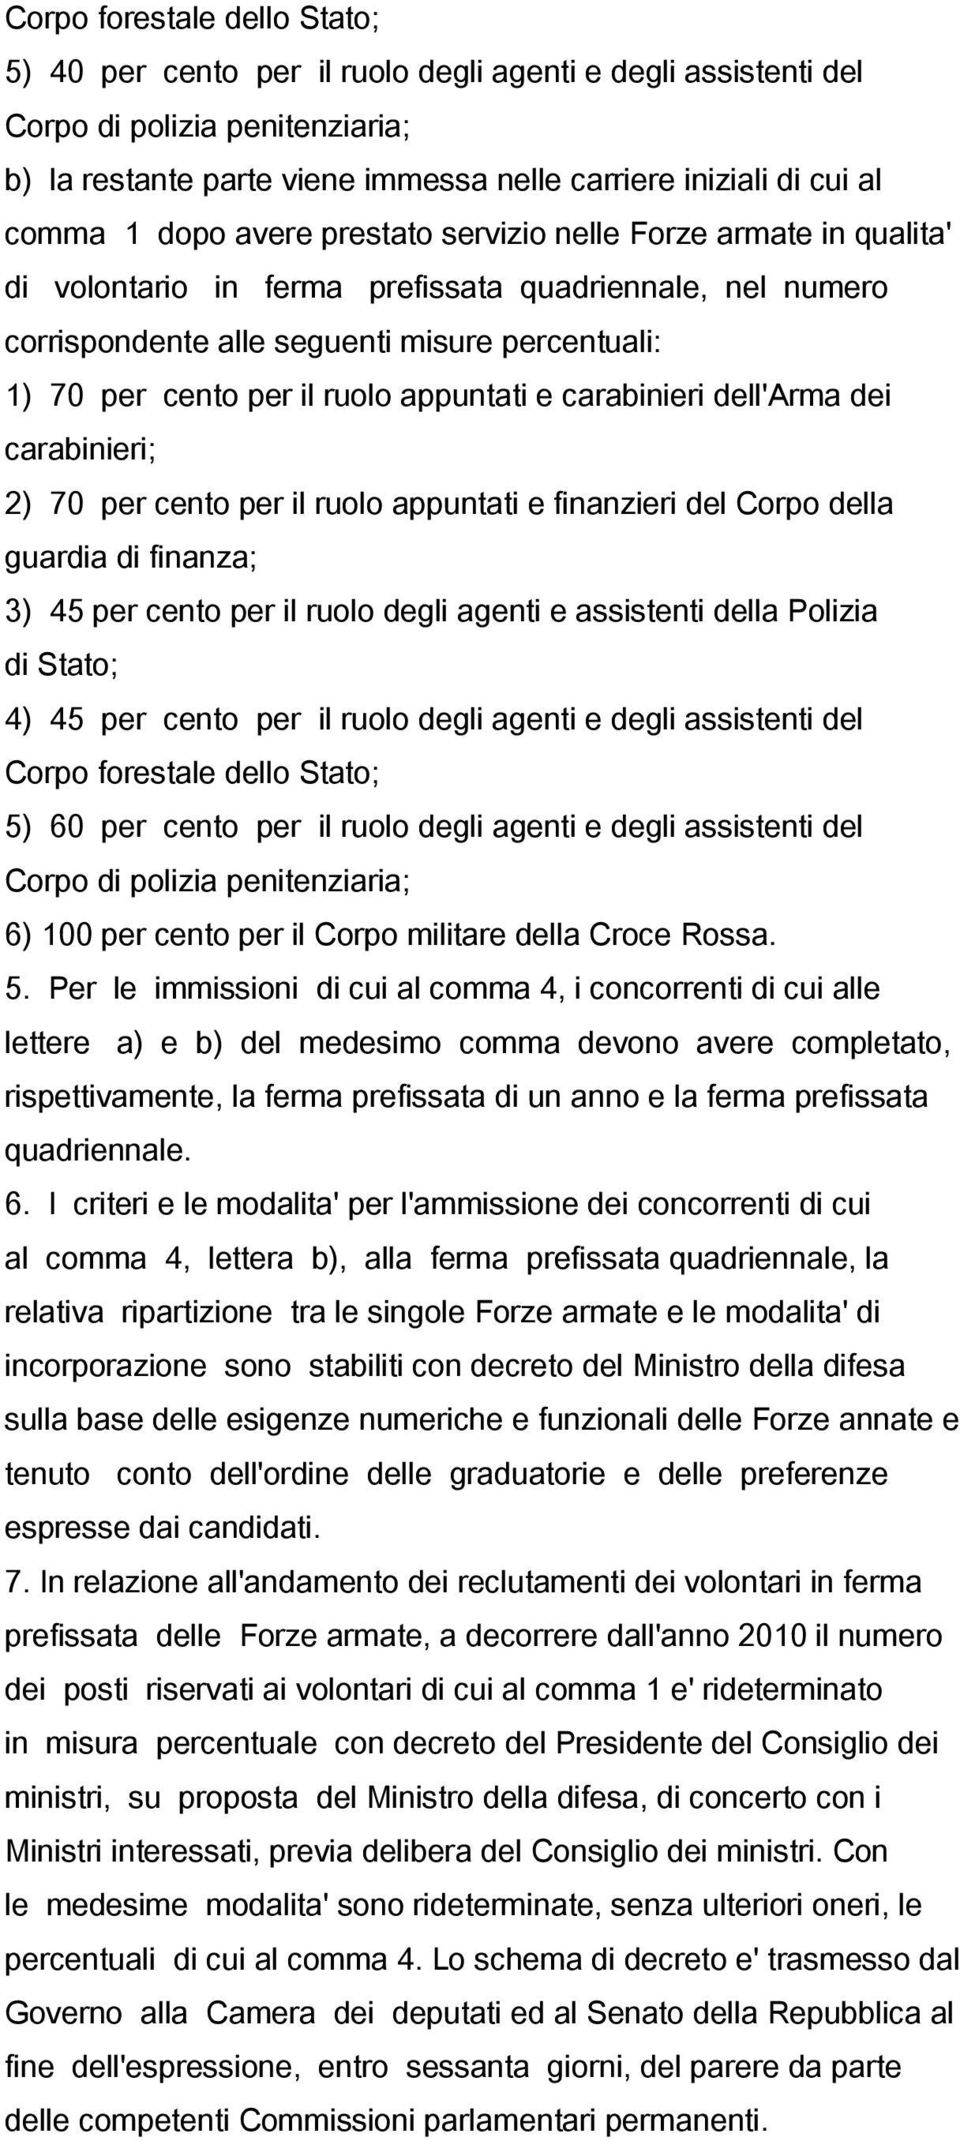 ruolo appuntati e carabinieri dell'arma dei carabinieri; 2) 70 per cento per il ruolo appuntati e finanzieri del Corpo della guardia di finanza; 3) 45 per cento per il ruolo degli agenti e assistenti